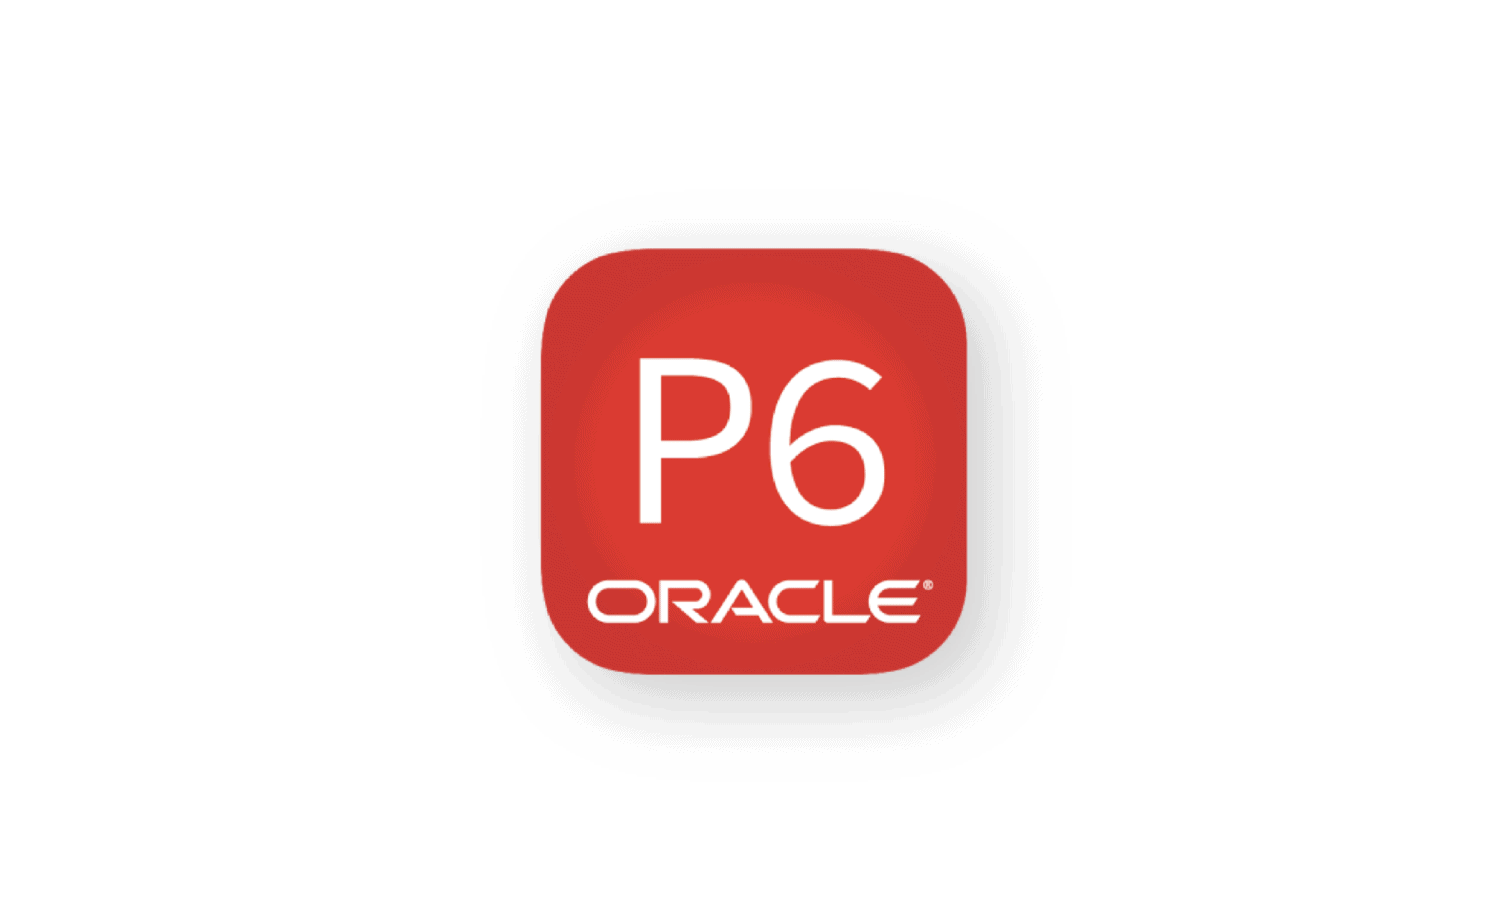 Oracle P6 logo